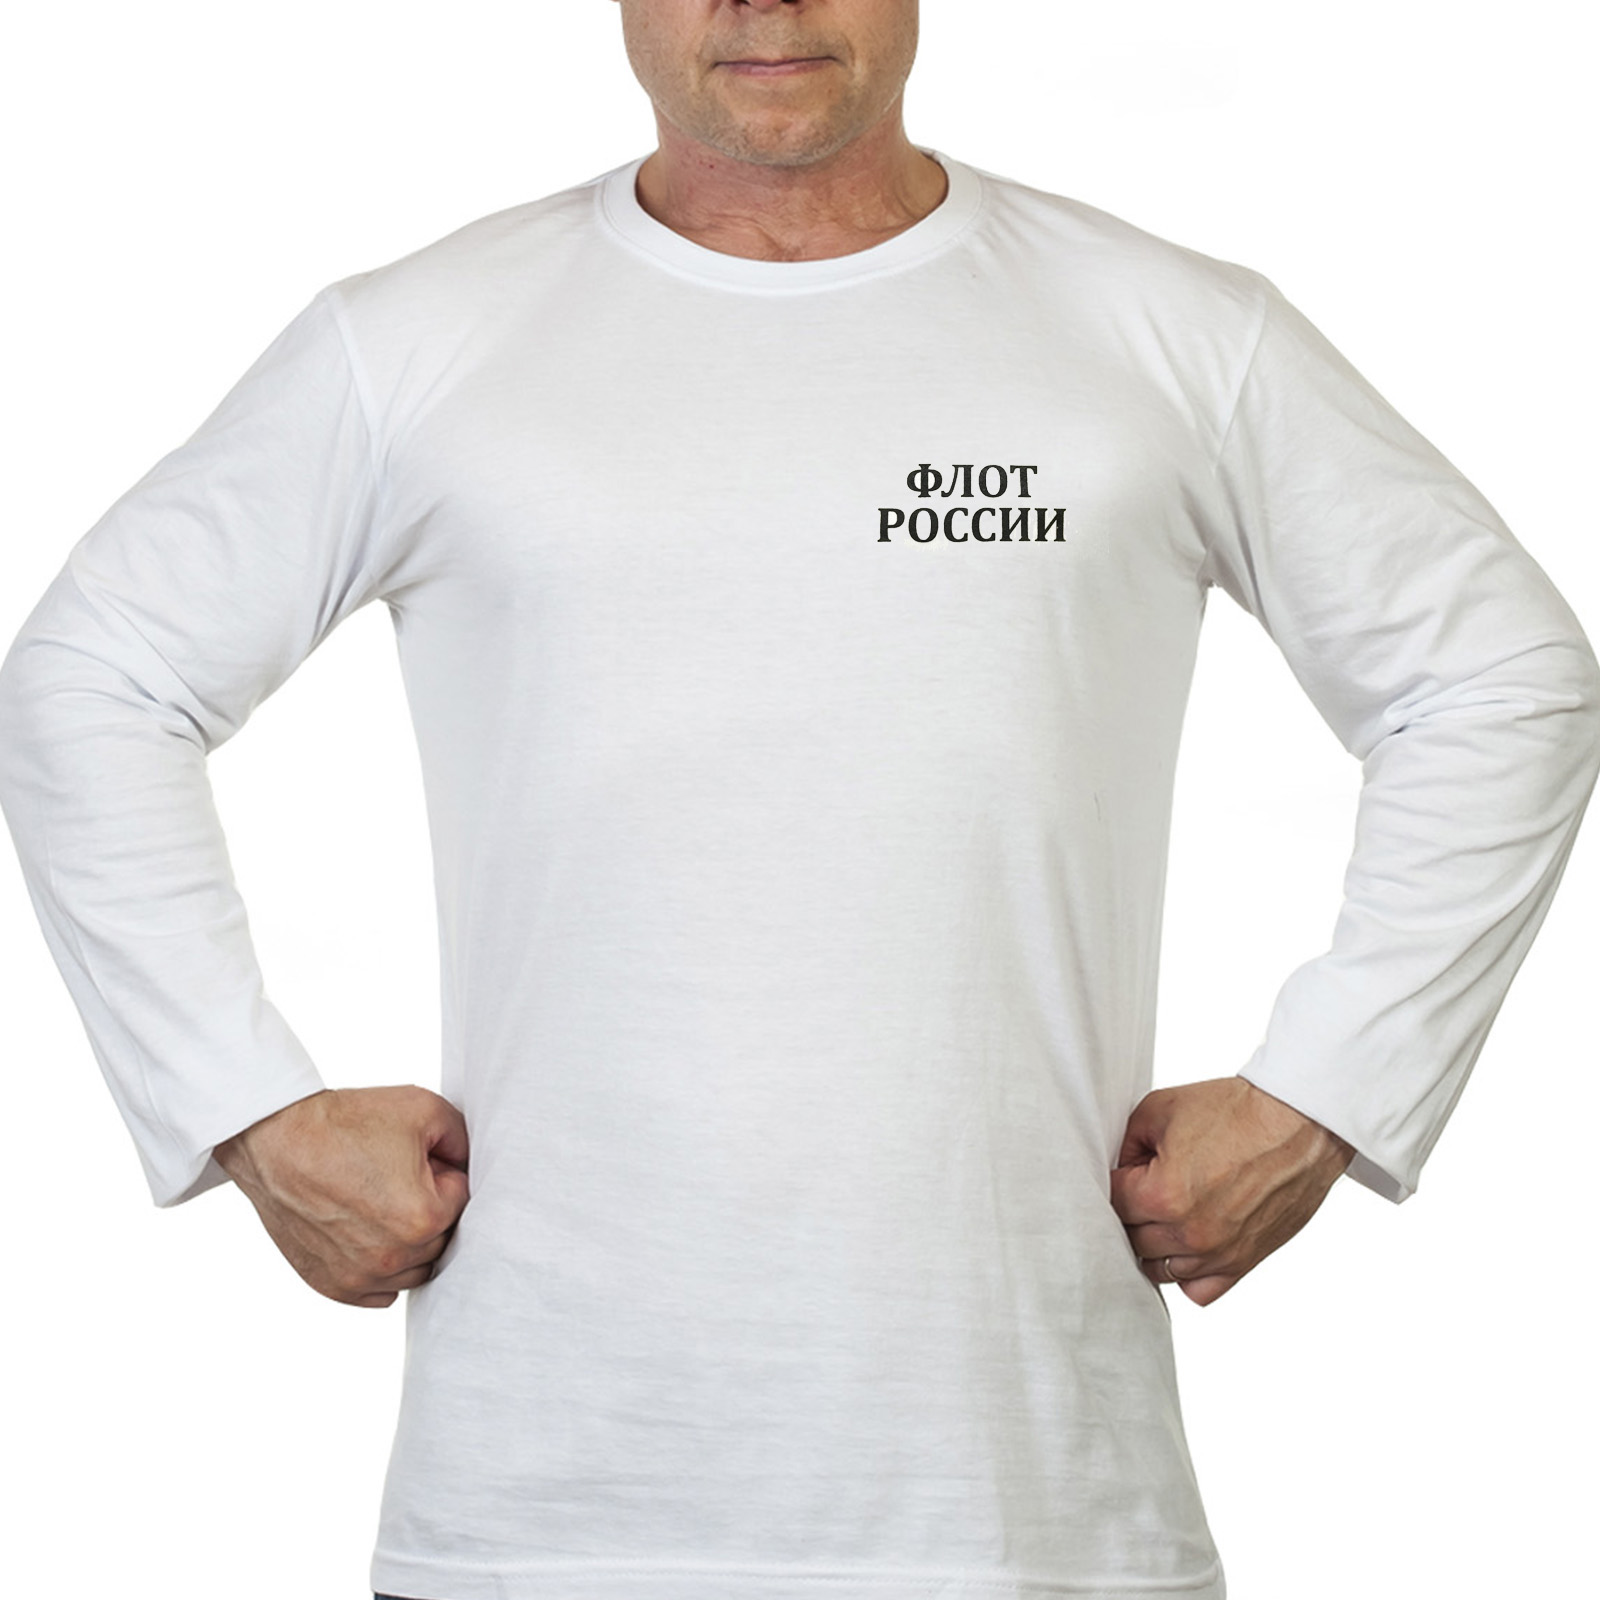 Купить белую футболку "Флот России" с длинным рукавом